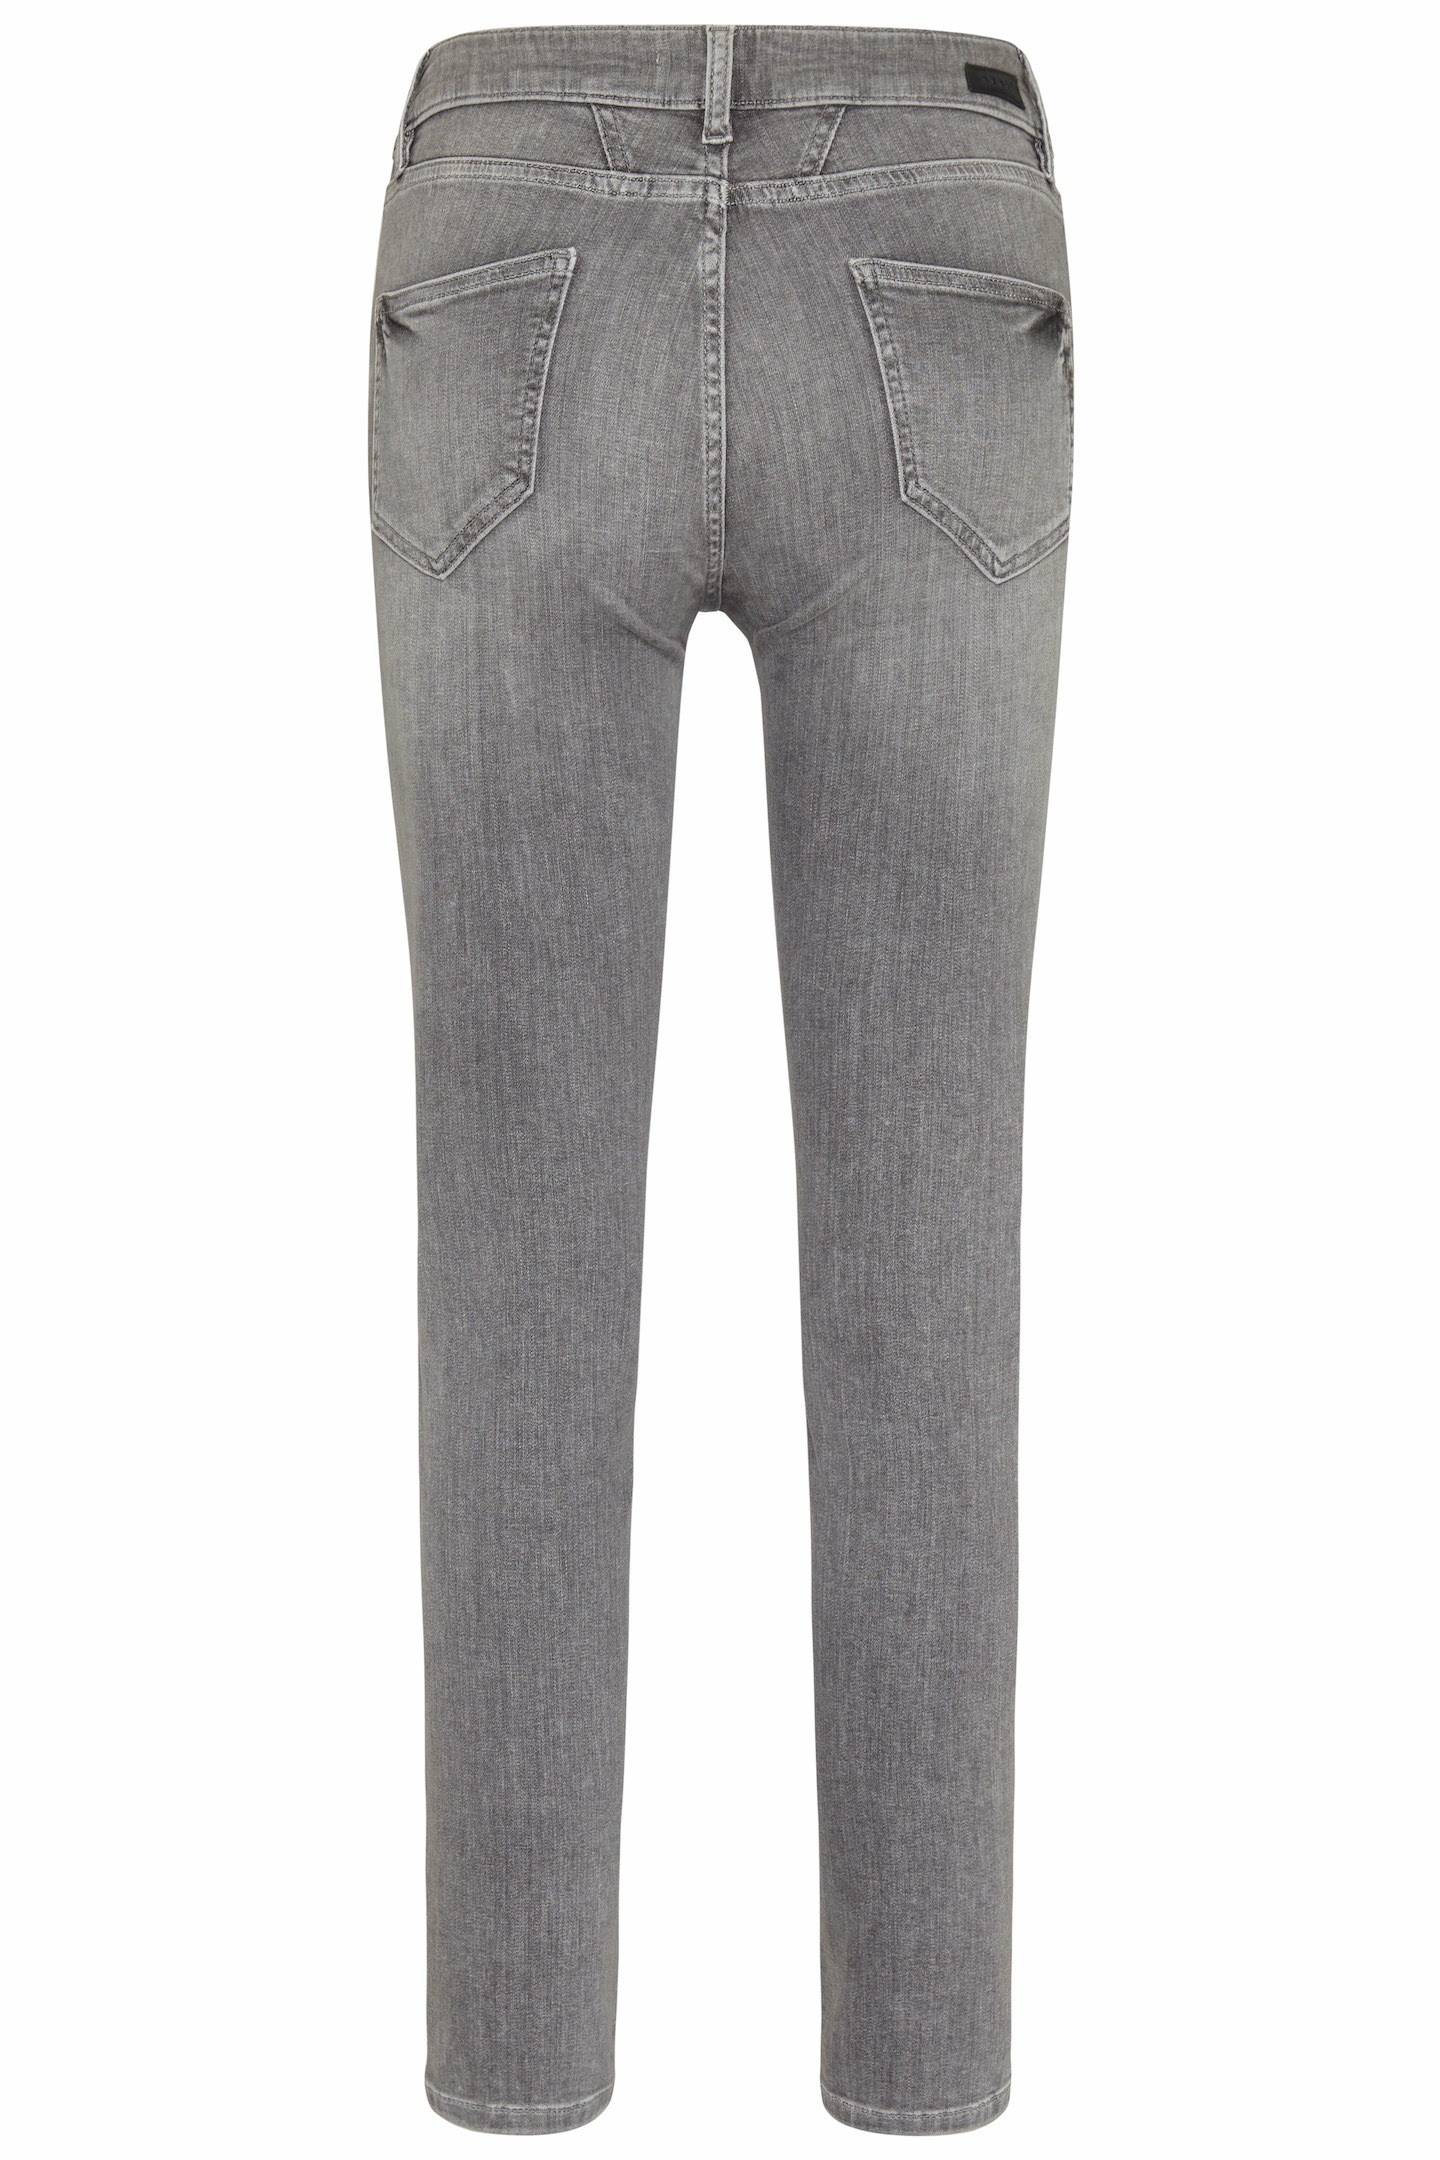 bugatti 5-Pocket-Jeans, leichte online Used-Waschung